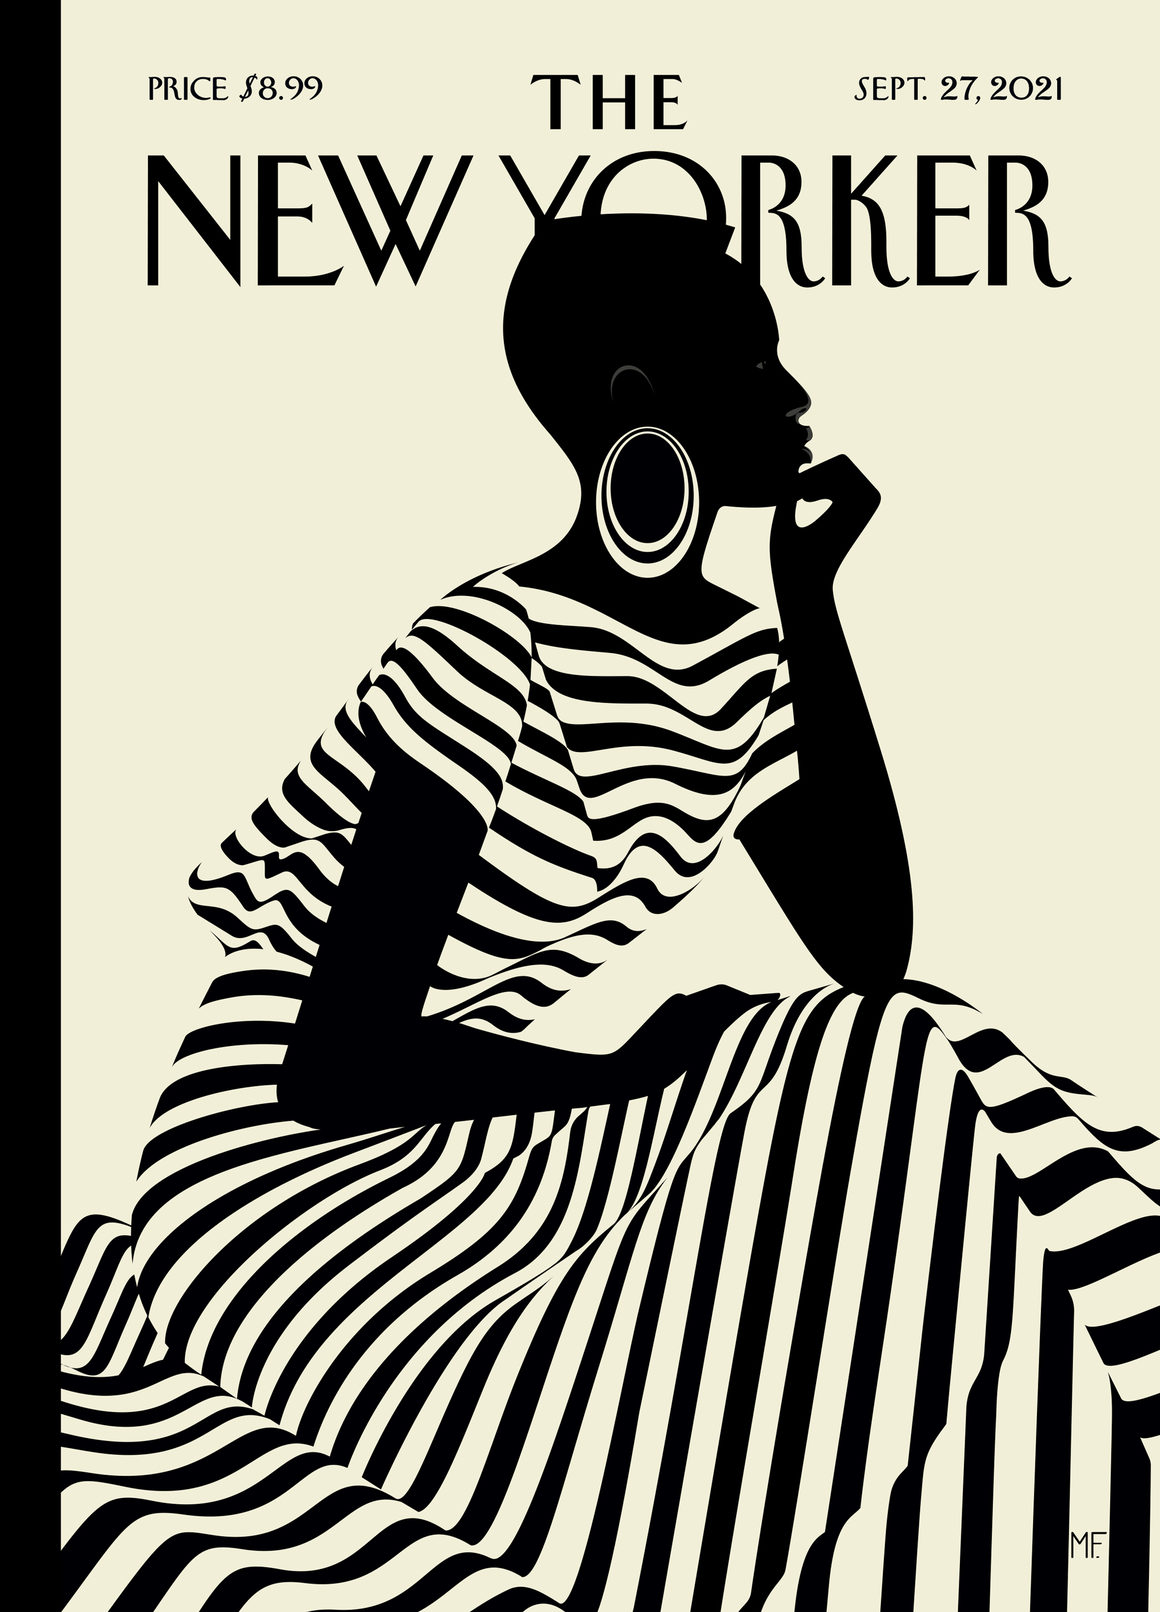 Couverture du New Yorker représentant une femme noire avec une robe zébrée, par Malika Favre